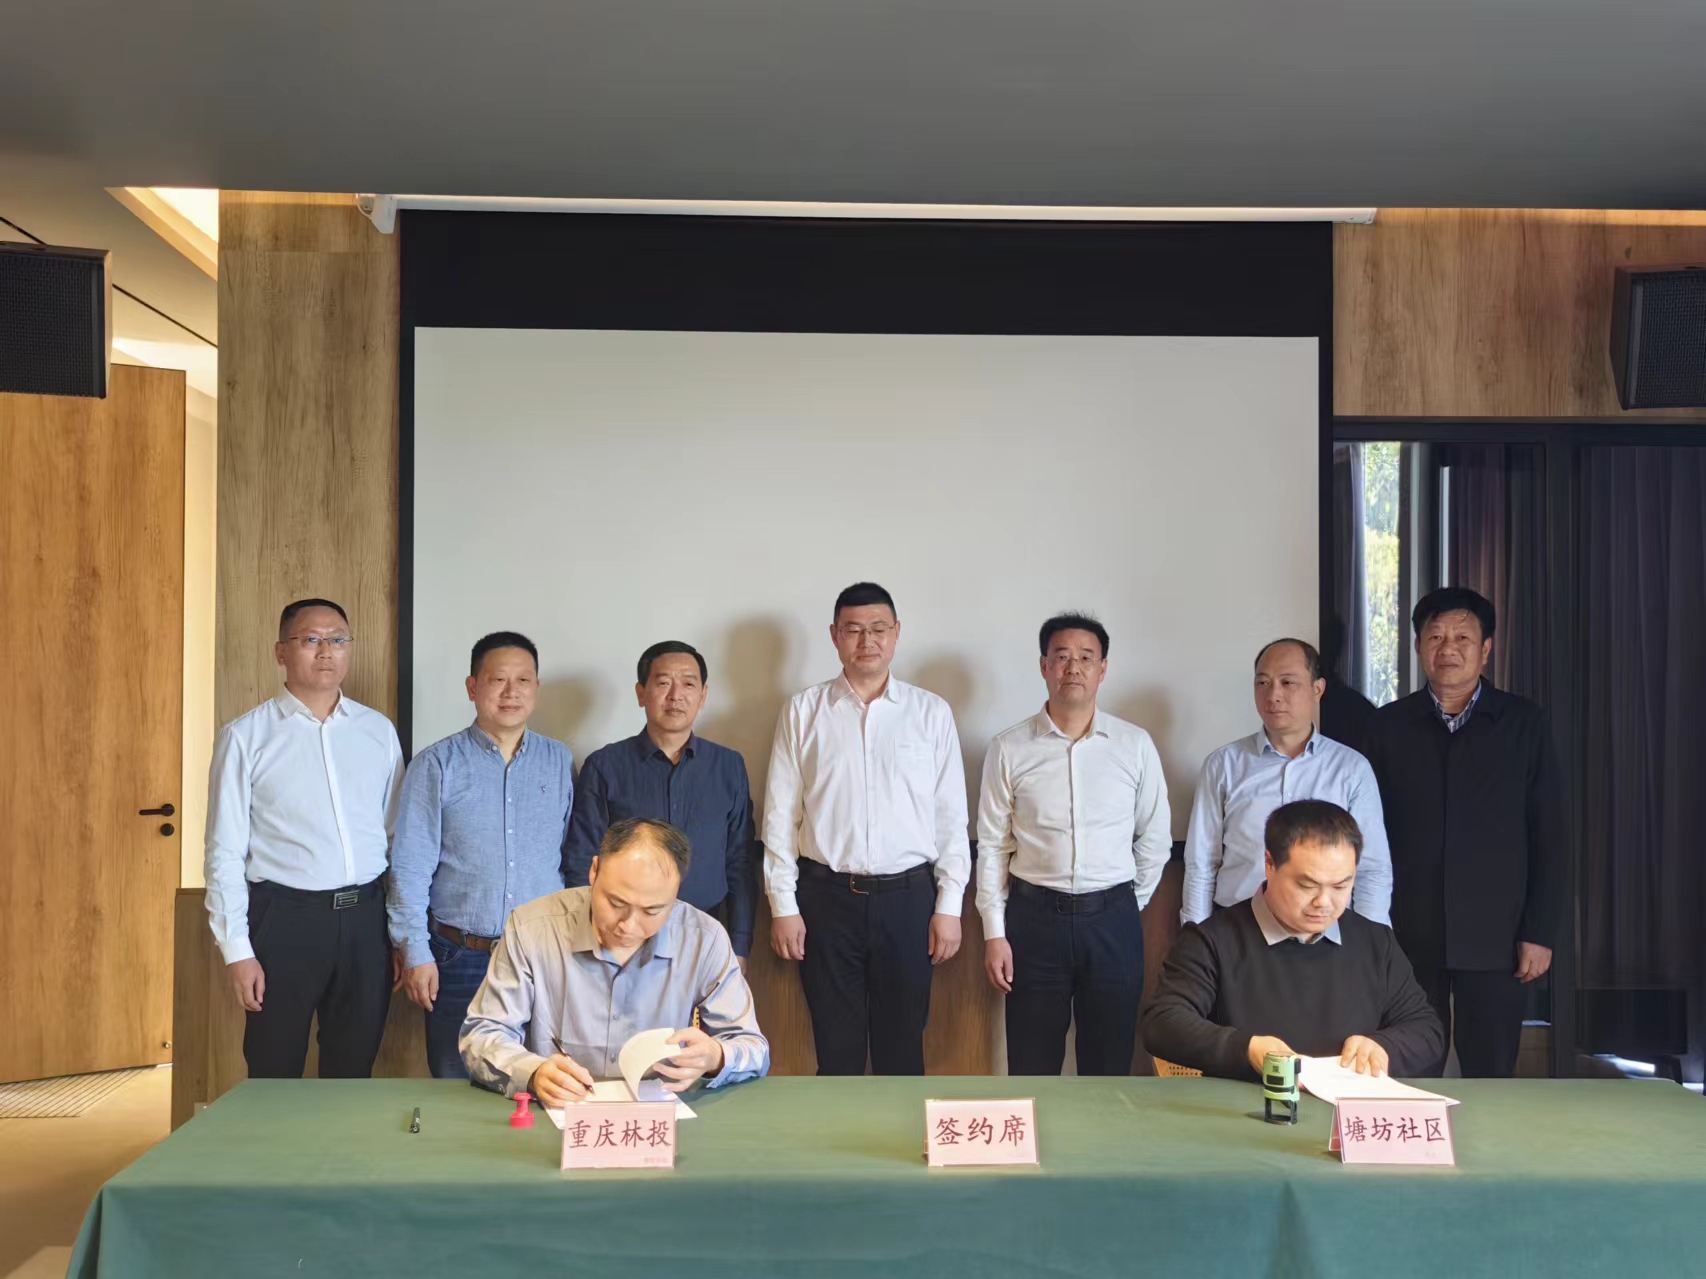 重庆林投公司与璧山区东风林场开展合作经营